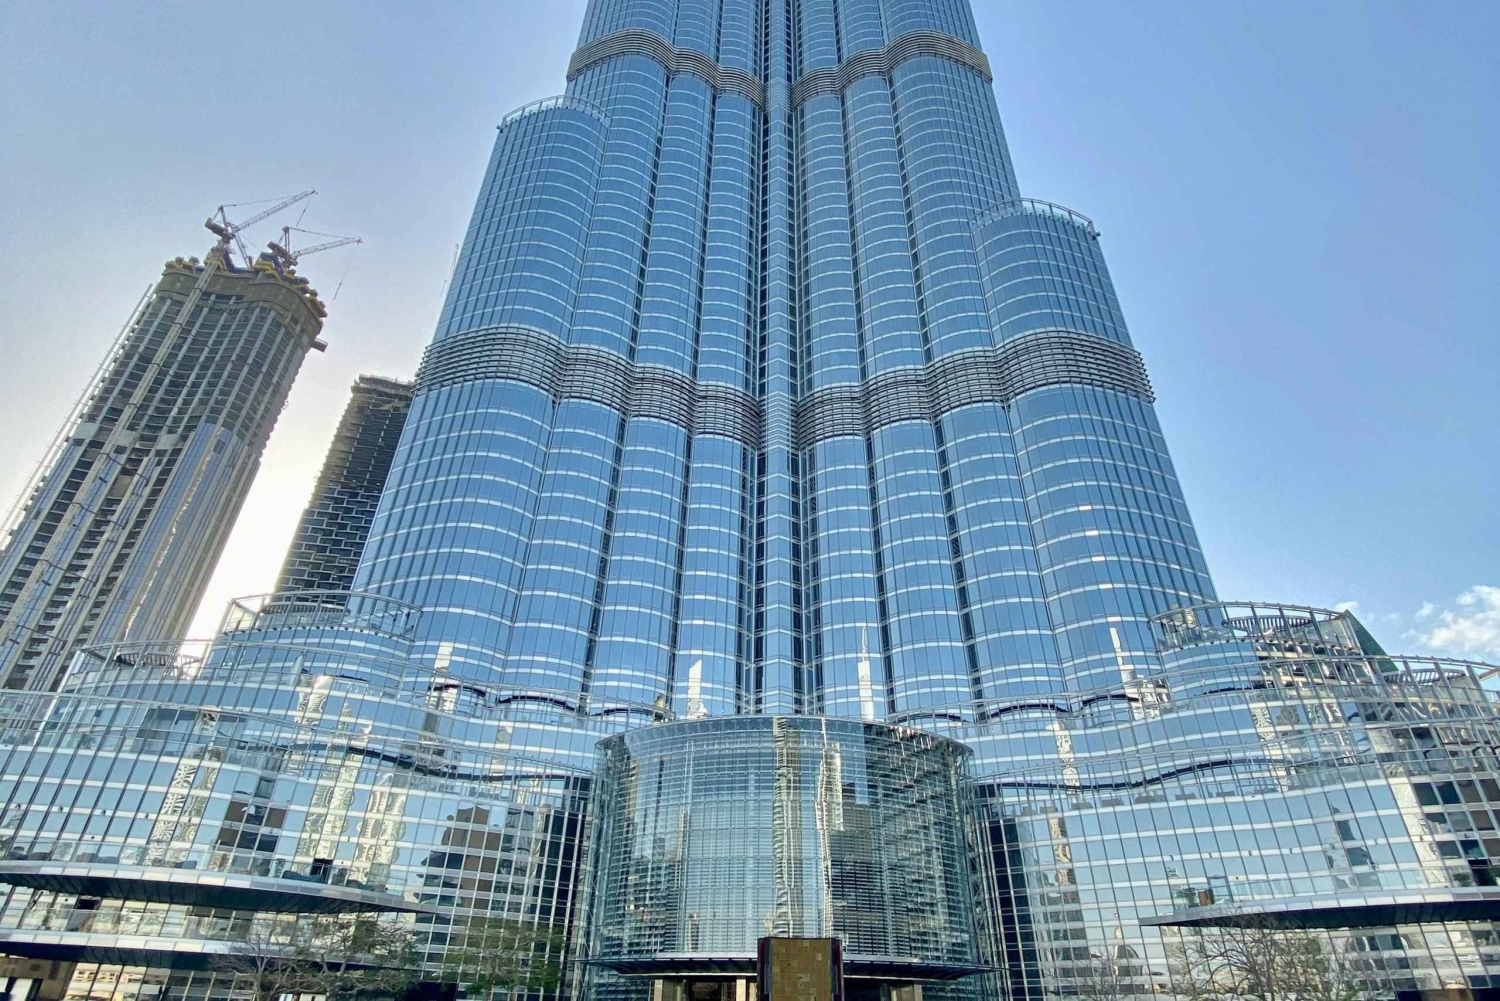 Dubai Private Tour With Burj Khalifa - Family